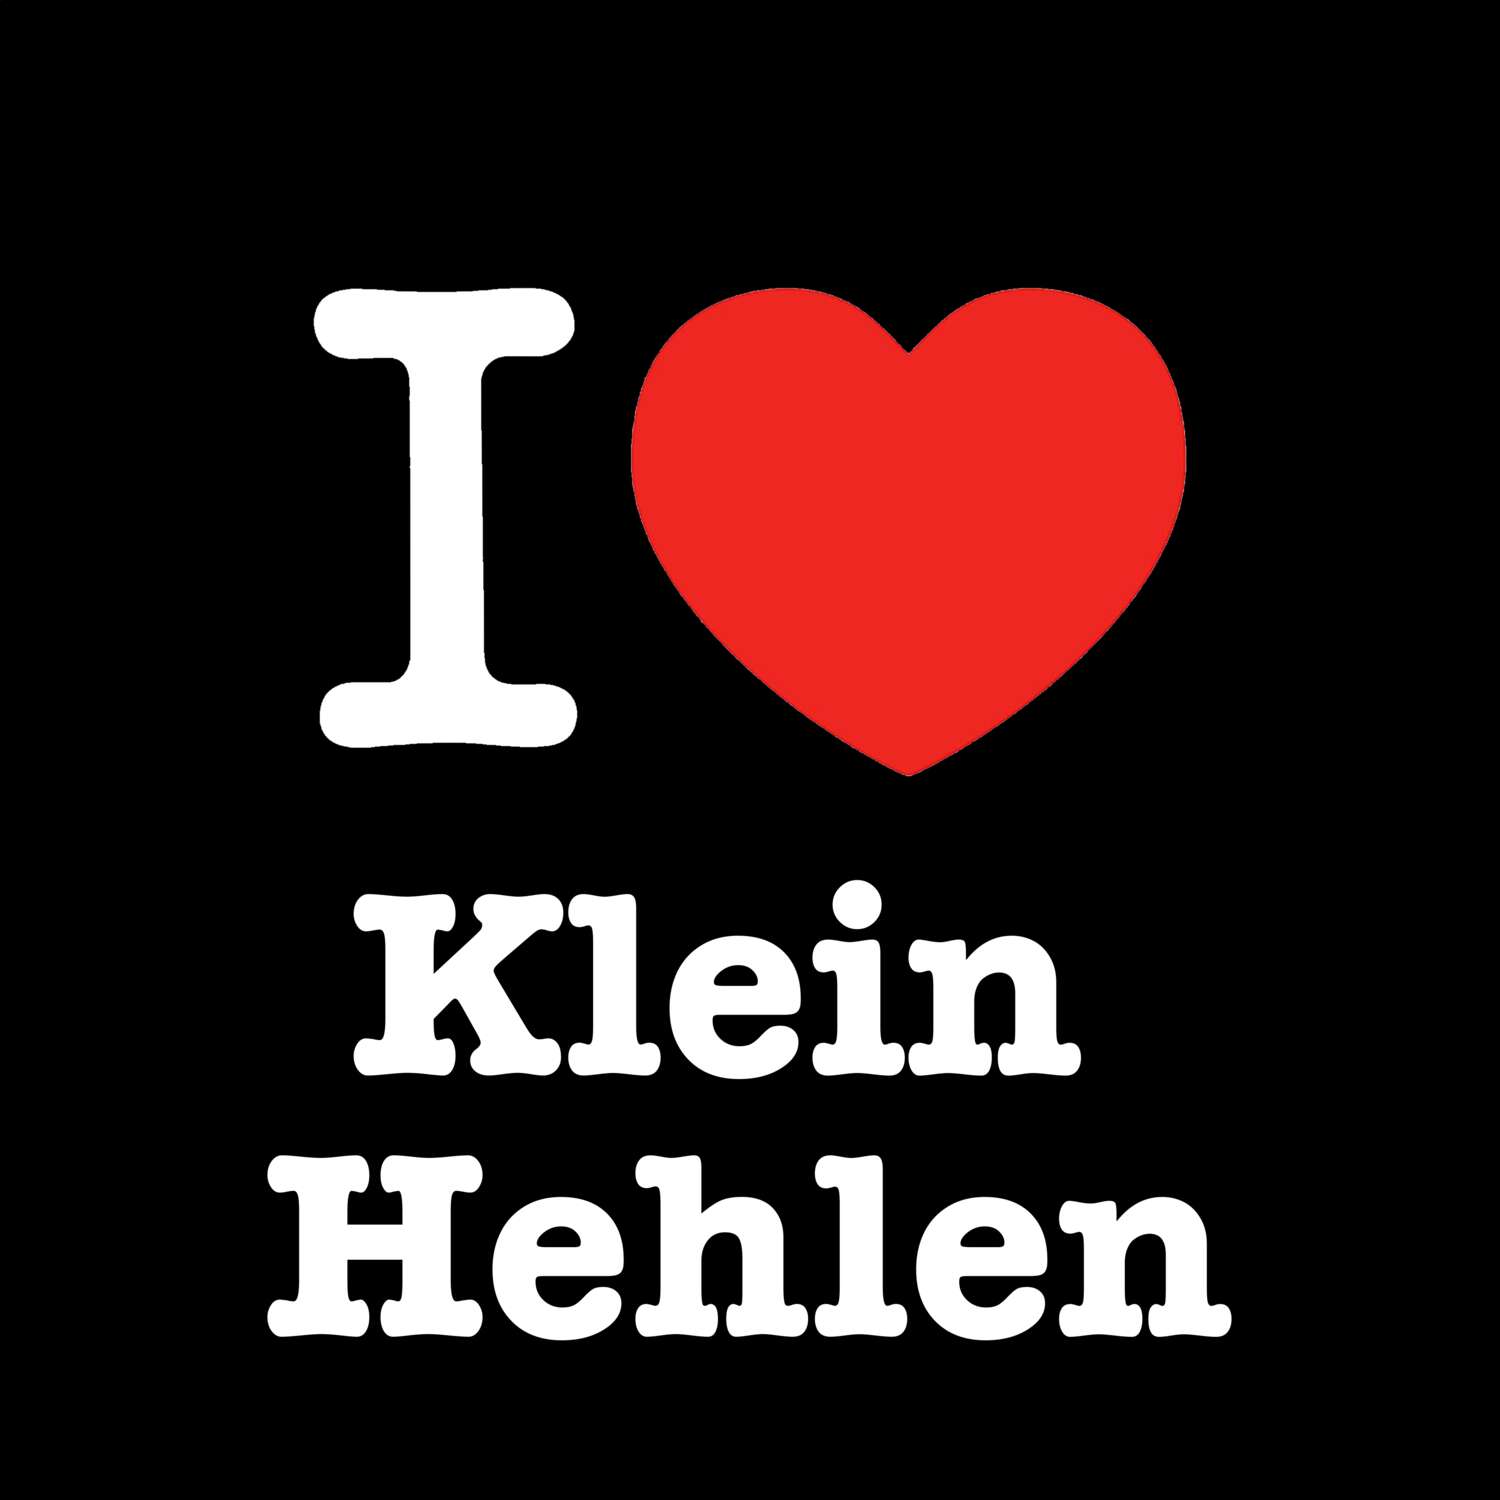 Klein Hehlen T-Shirt »I love«